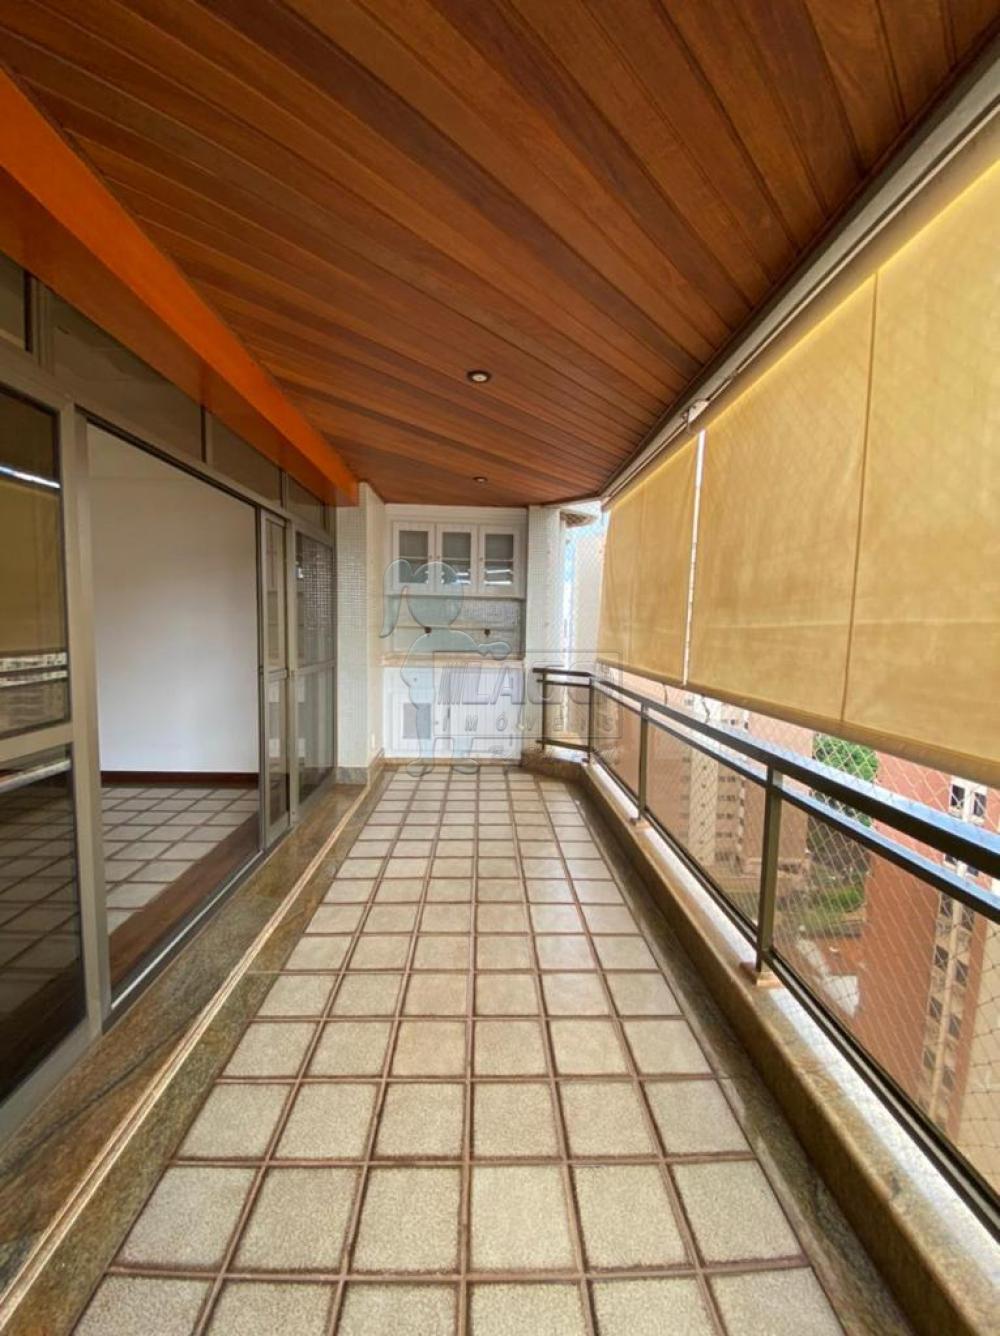 Comprar Apartamentos / Padrão em Ribeirão Preto R$ 690.000,00 - Foto 2